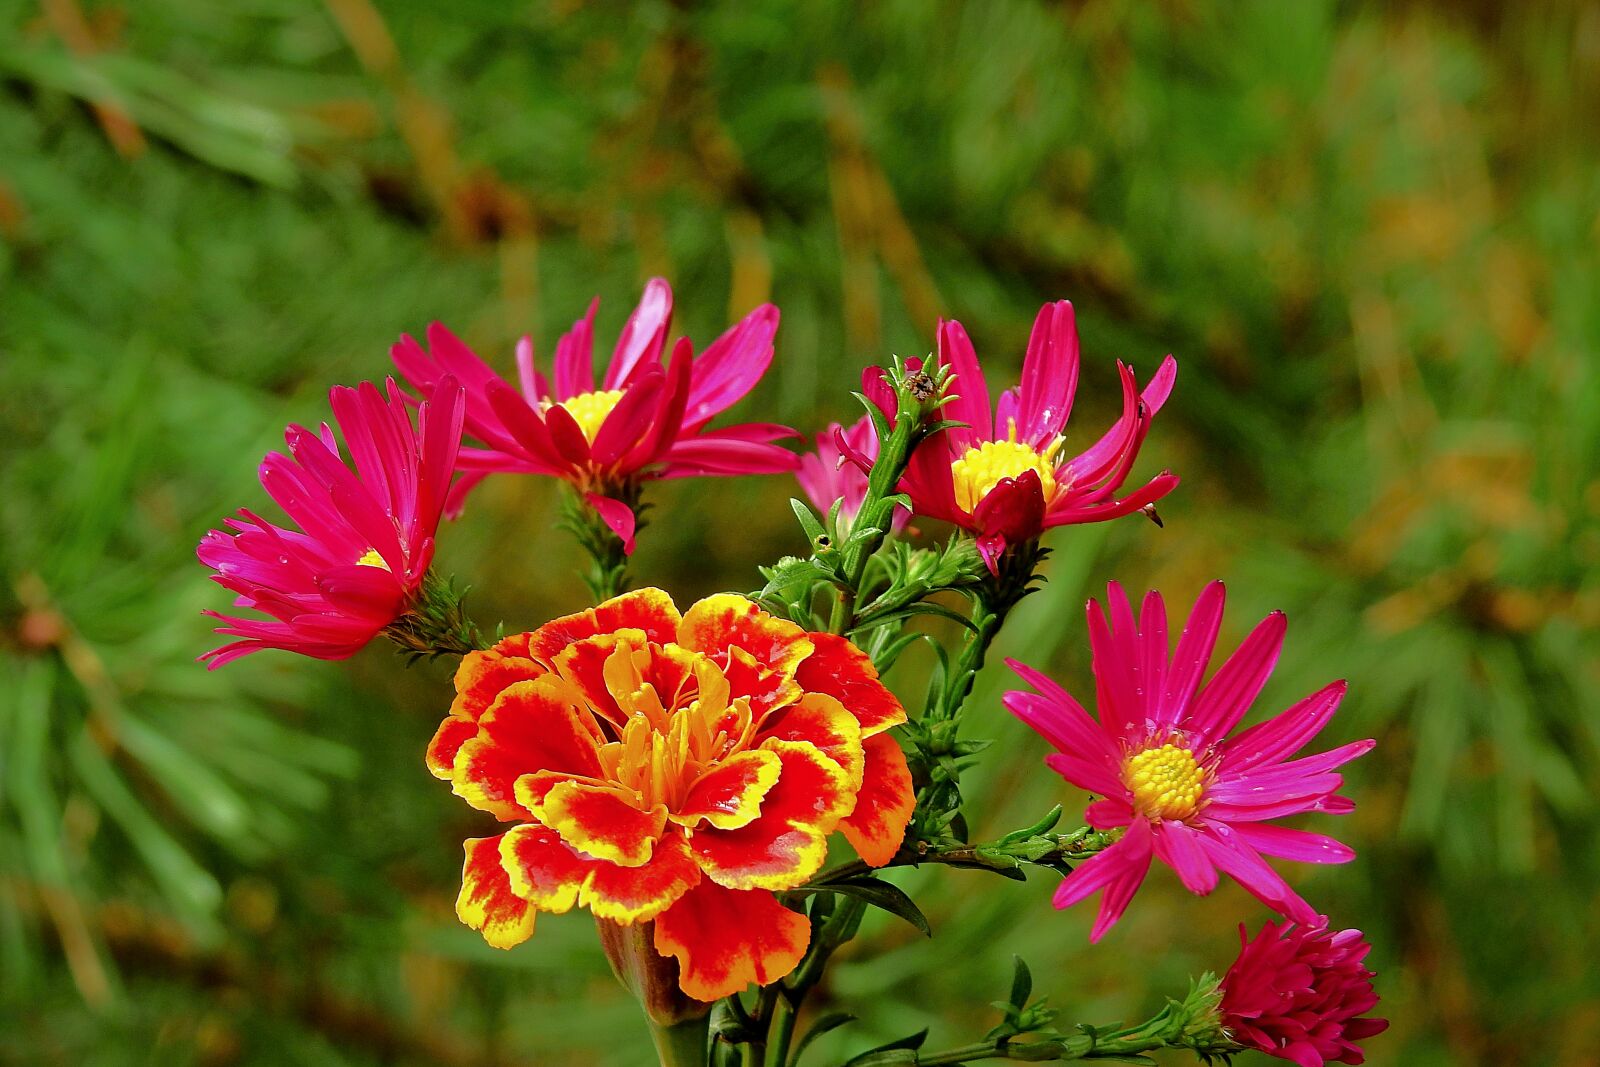 Nikon Coolpix P900 sample photo. Flowers, bouquet, romantic photography